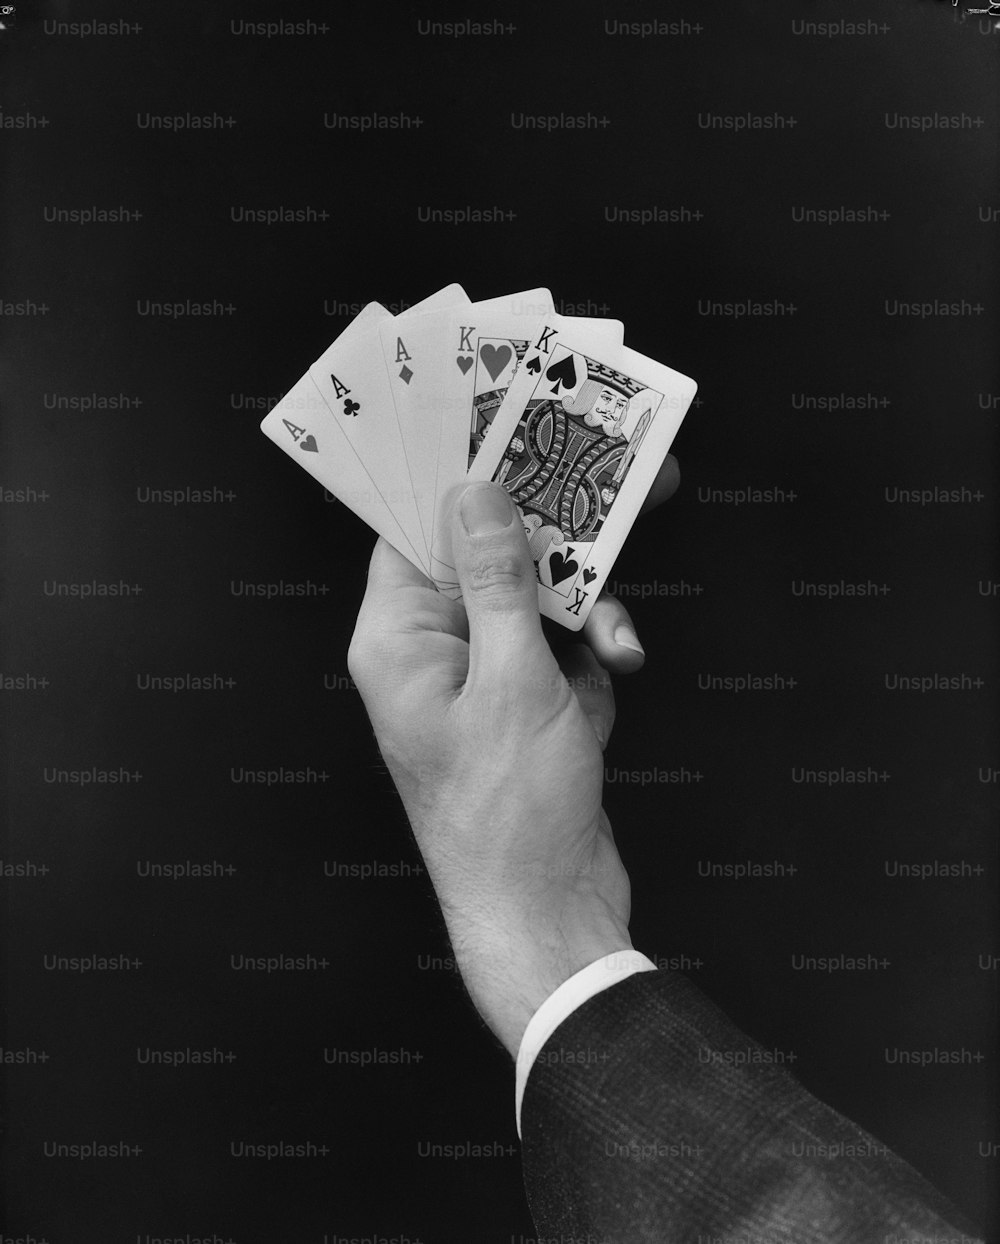 ÉTATS-UNIS - Circa 1950s : Main d’un homme tenant une main de carte de poker 'full house'.